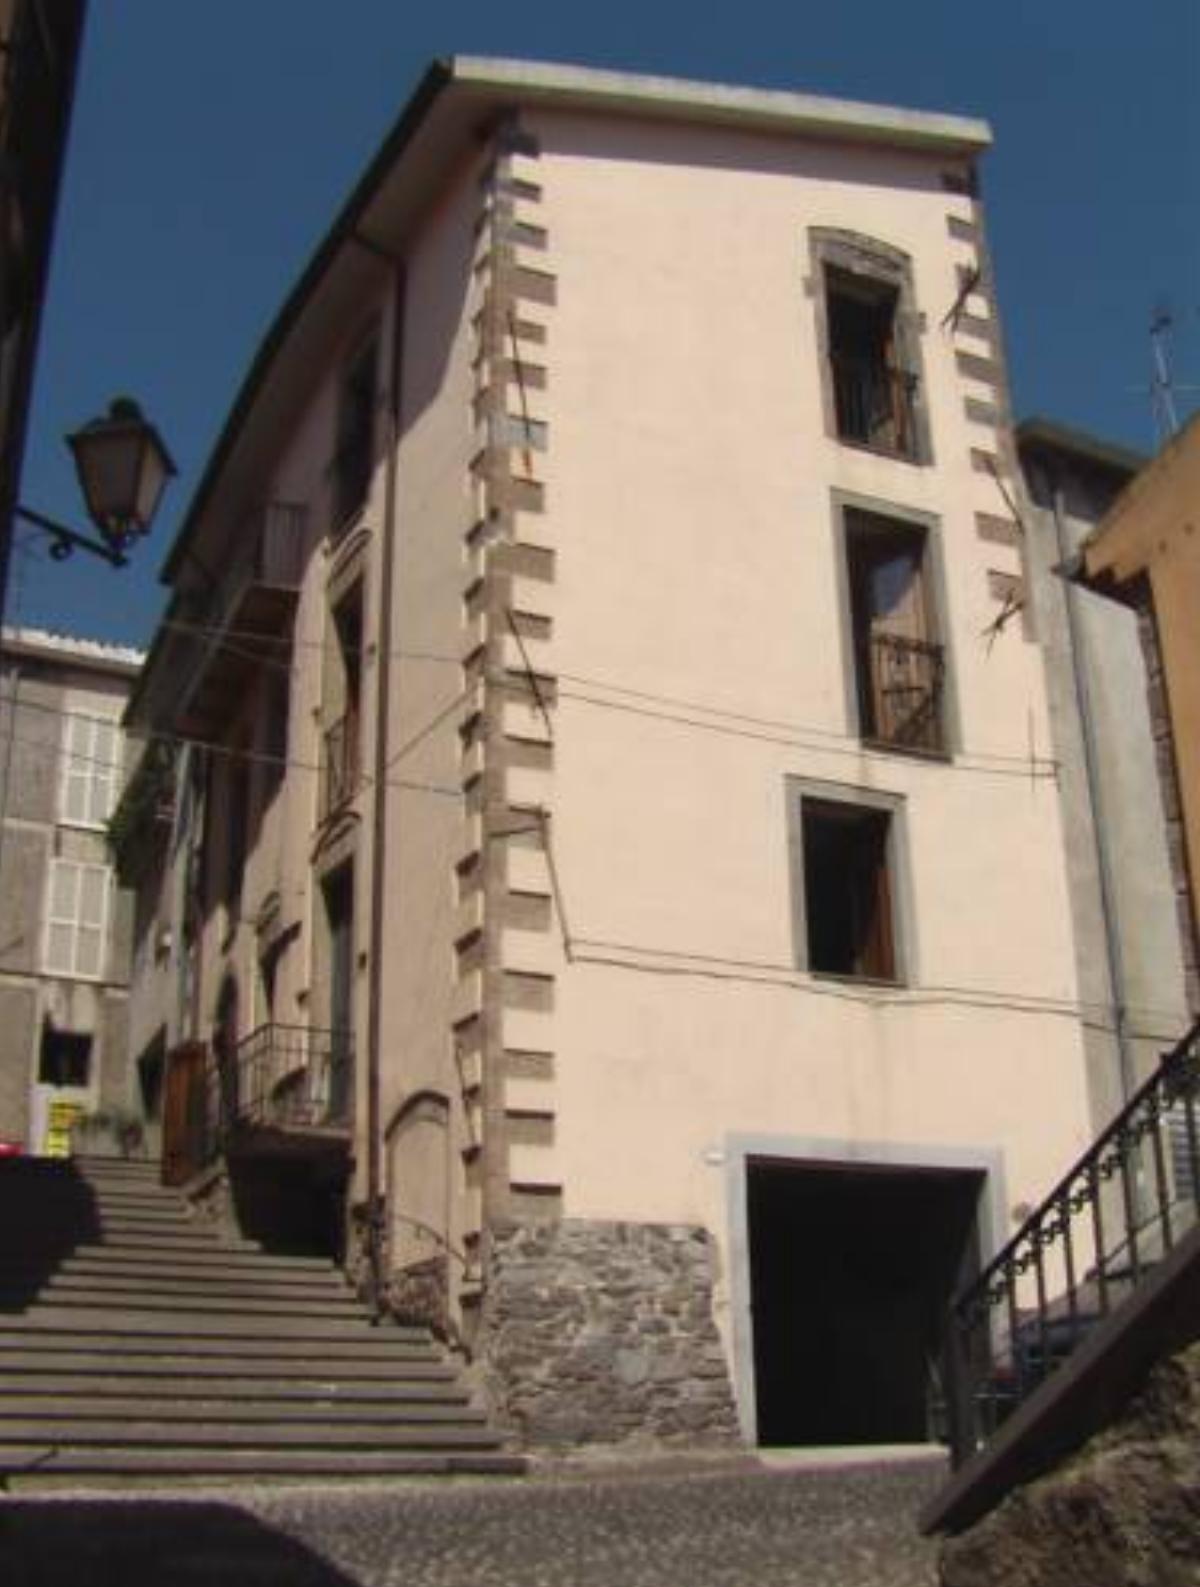 Casa in pietra Hotel Santu Lussurgiu Italy